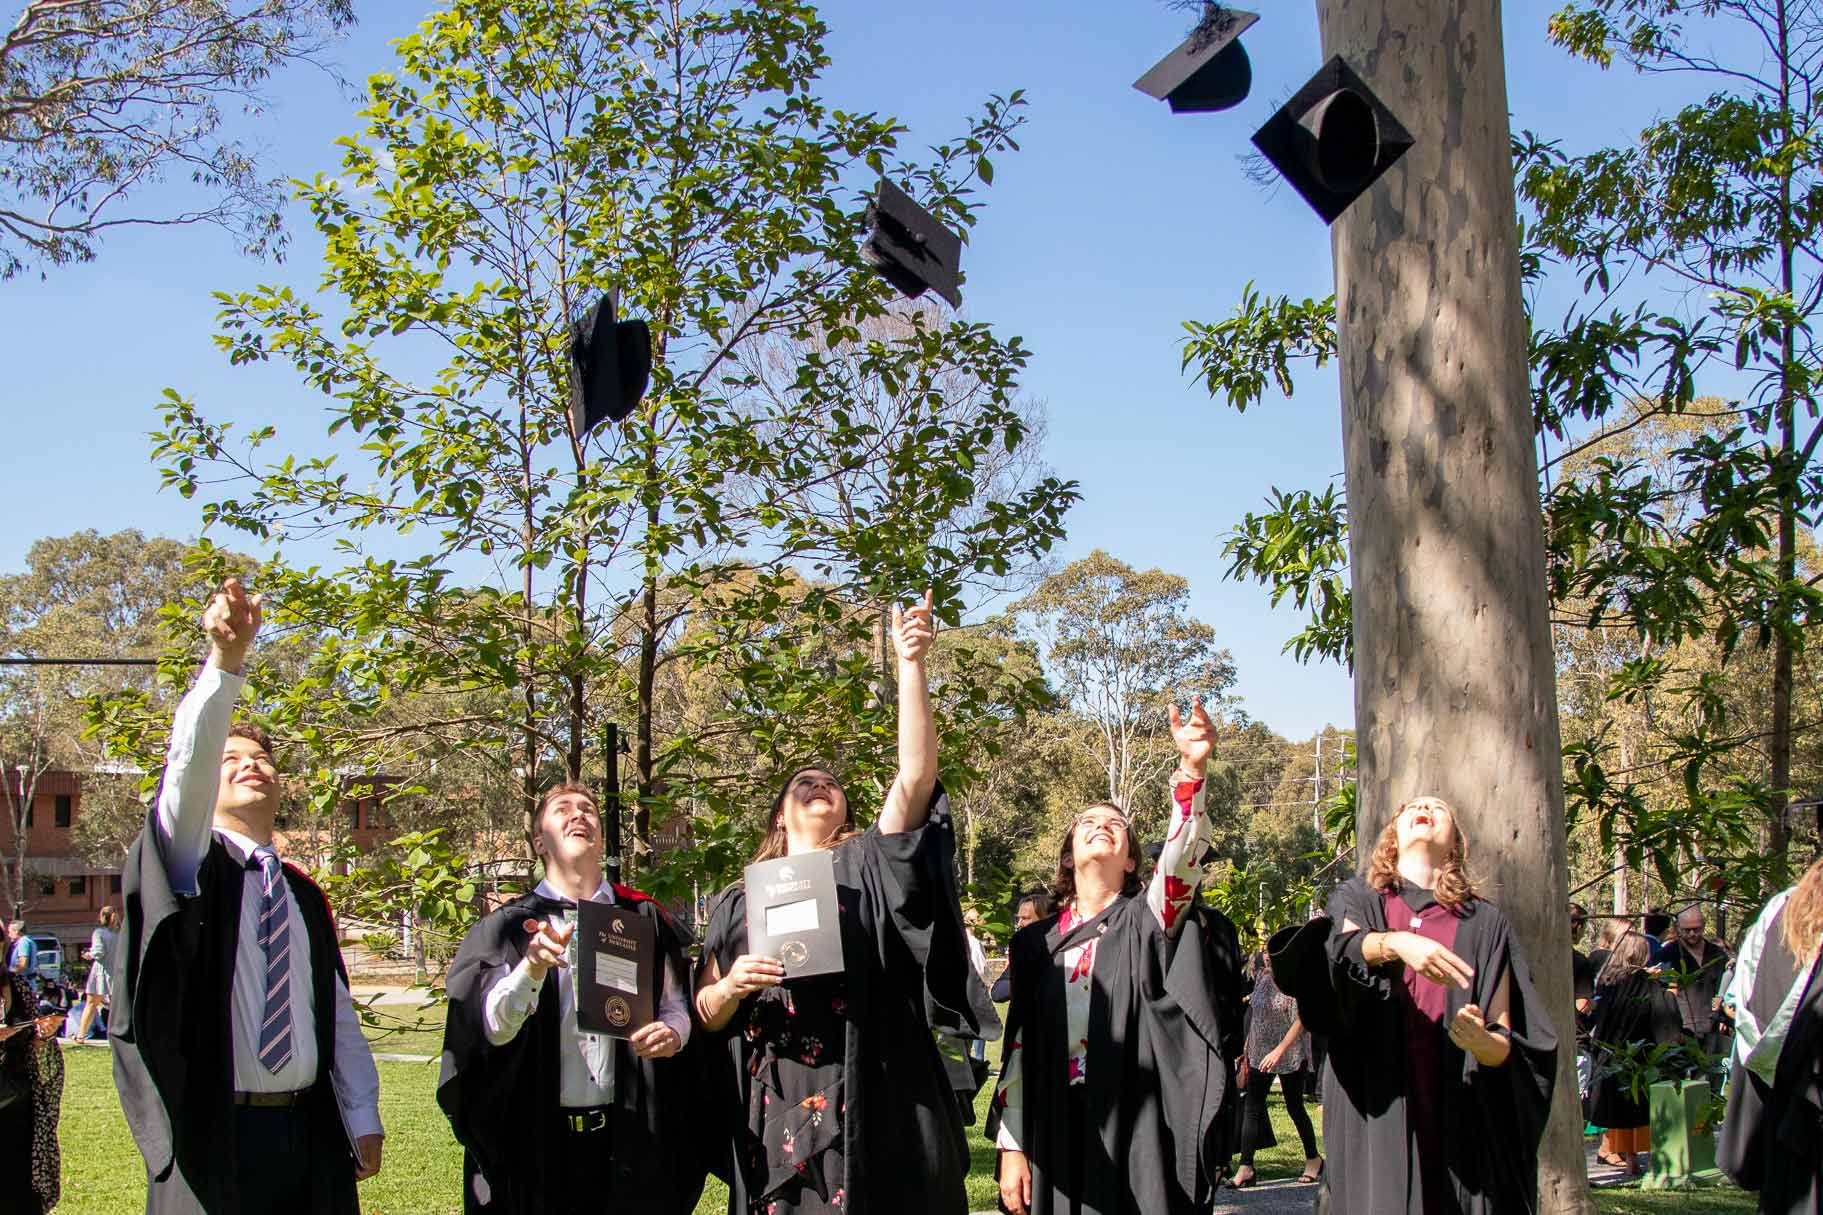 Graduates throw hat in air